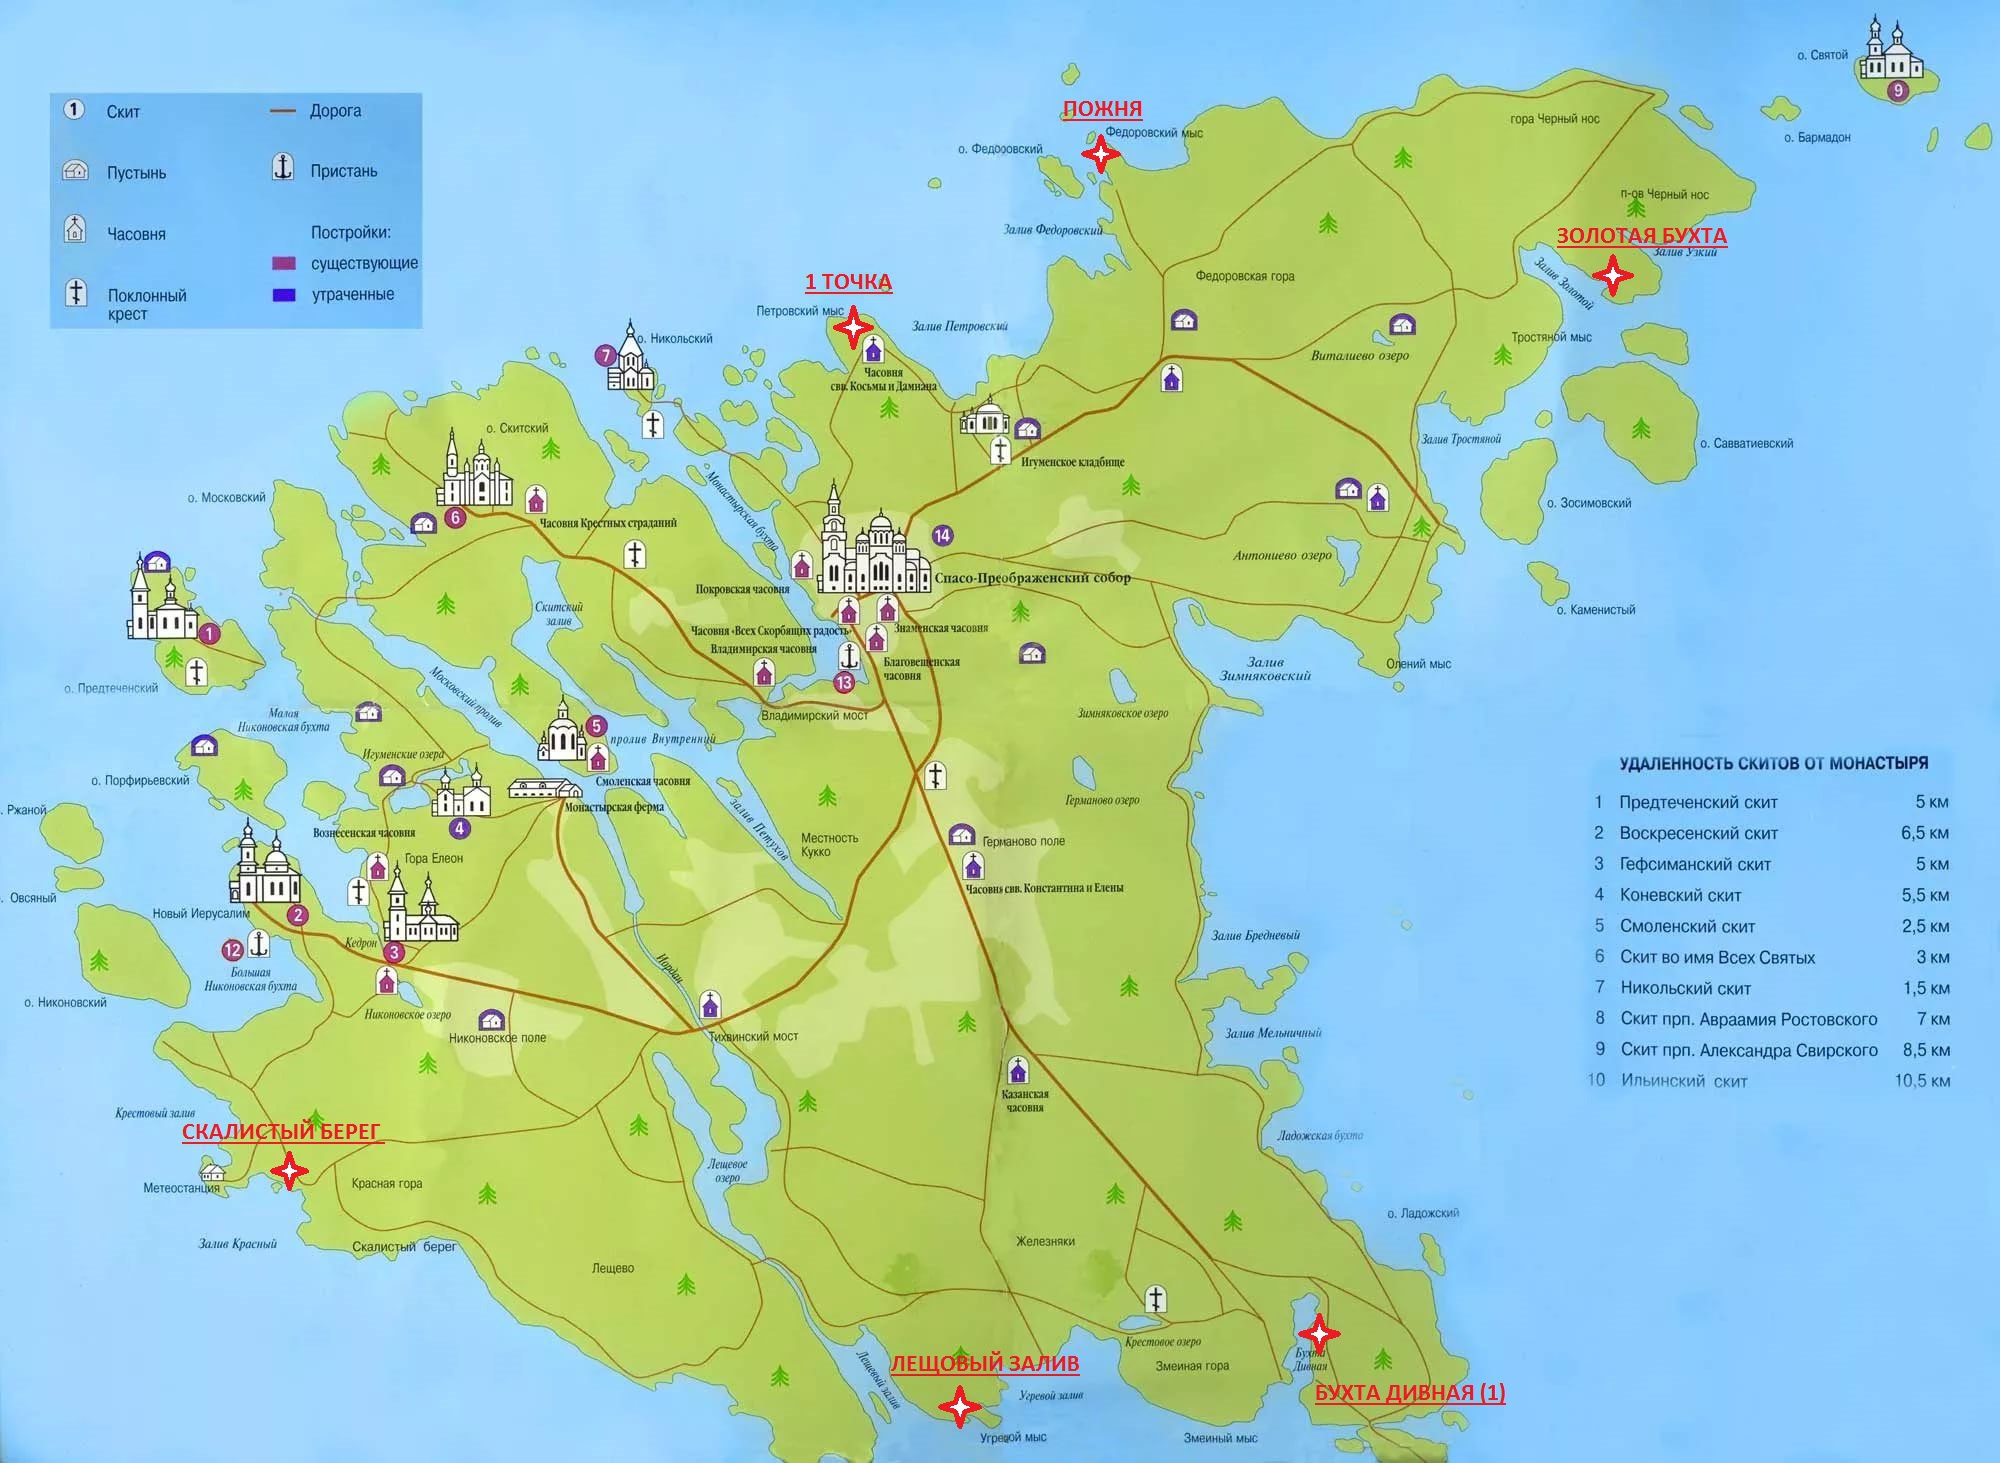 Палаточные стоянки отмечены на карте красным. Фото: группа во «Вконтакте» «Палаточные стоянки на острове&nbsp;Валаам»